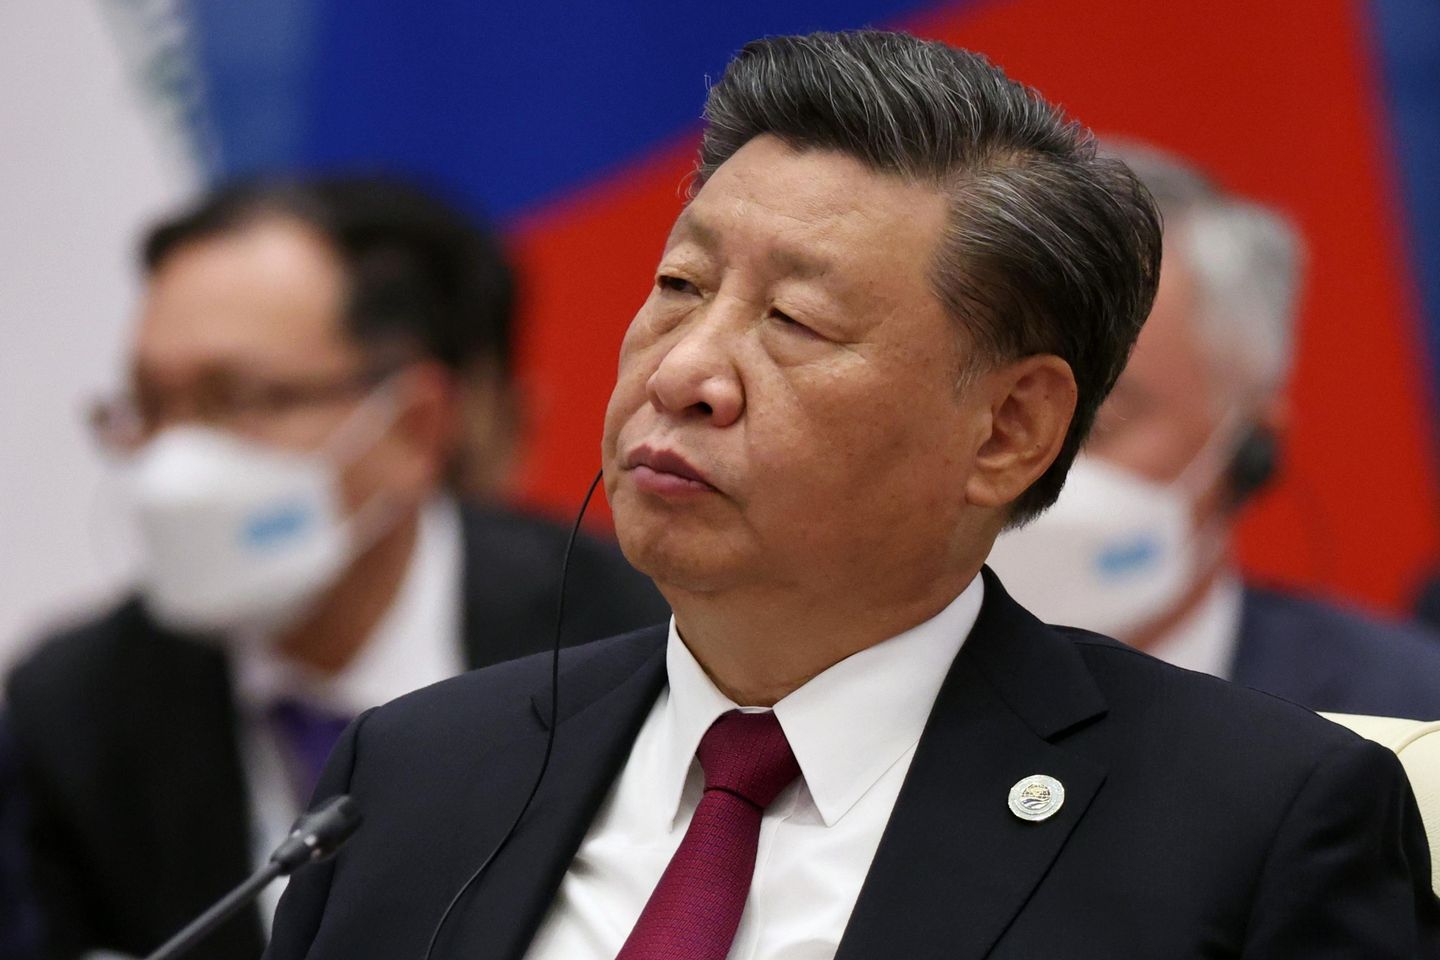 Çinli Xi, 'renkli devrimleri' önlemek için çaba gösterilmesi çağrısında bulundu